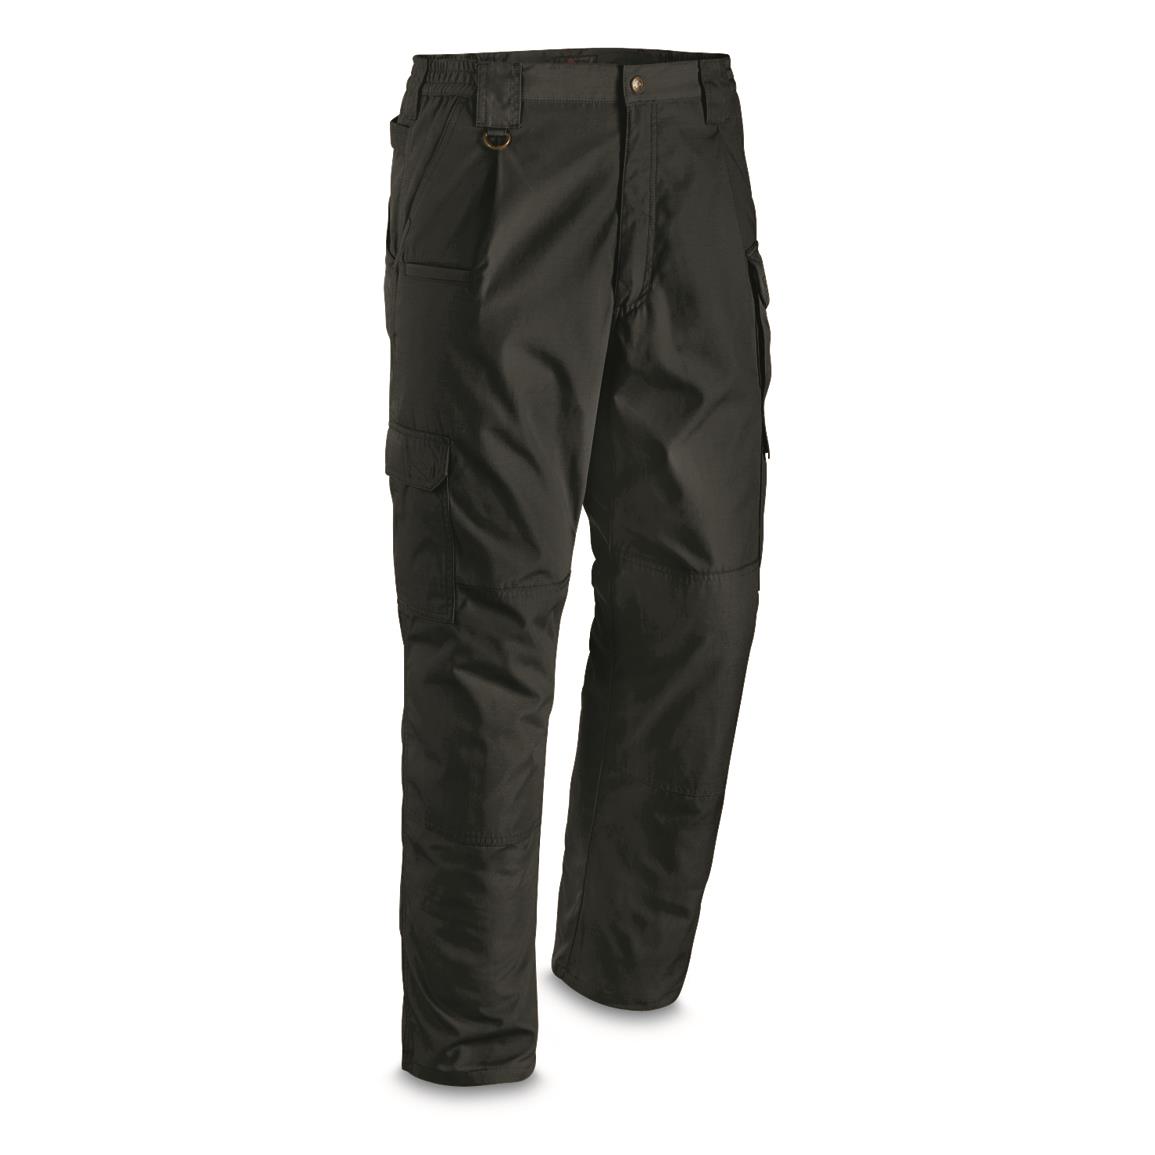 5.11 Men's Tactical Taclite Pro Pants, Black